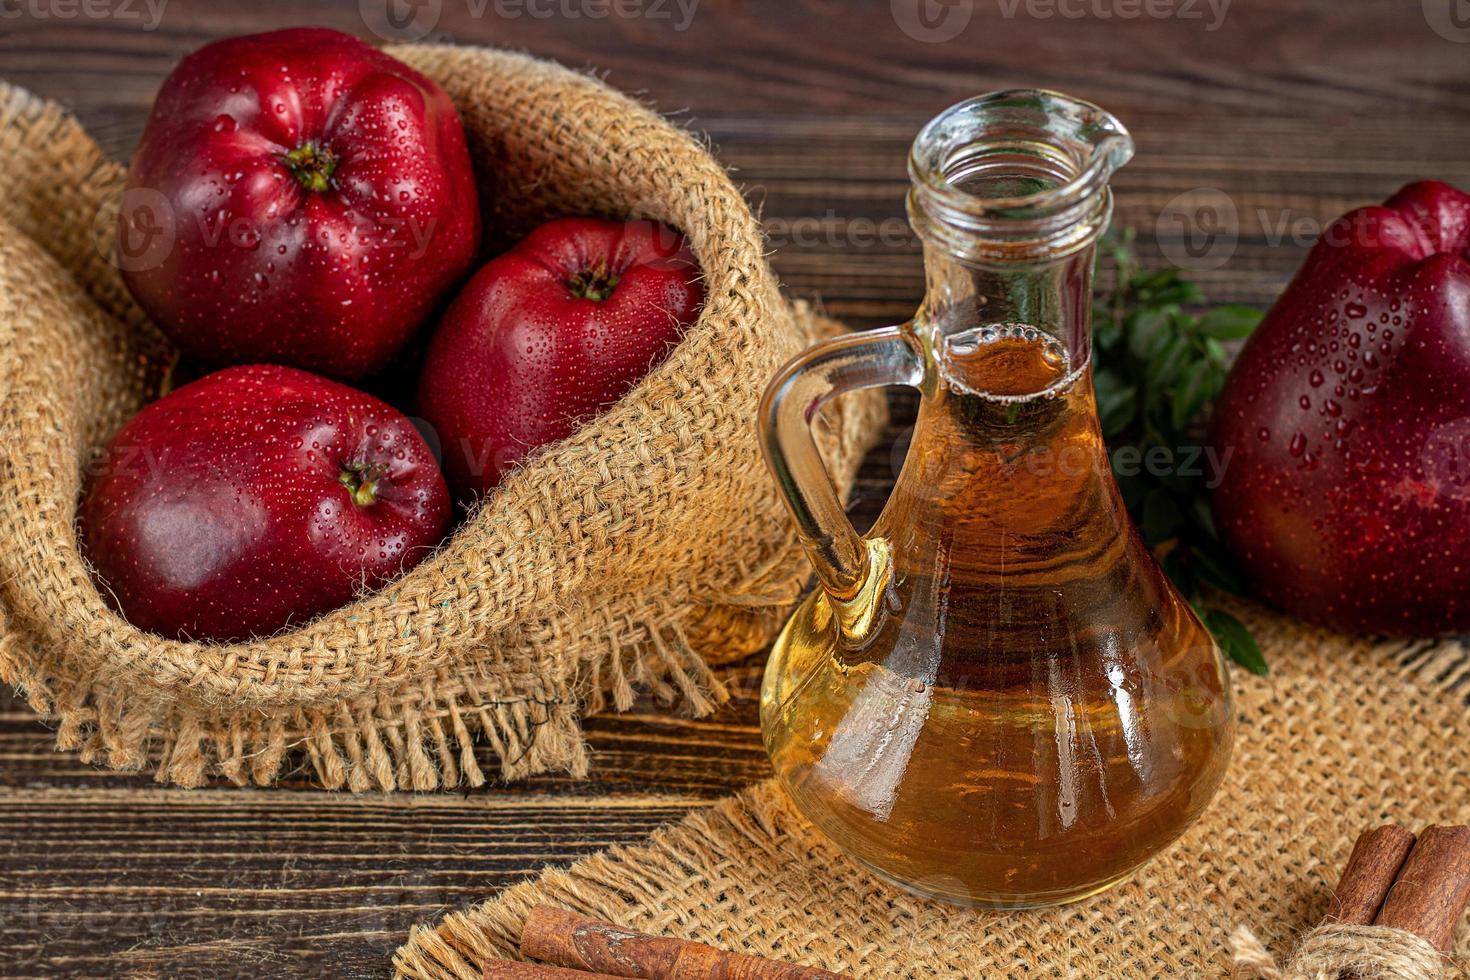 vinagre de maçã e maçãs vermelhas em um fundo escuro de madeira. foco seletivo. produto fermentado. comida saudável. foto